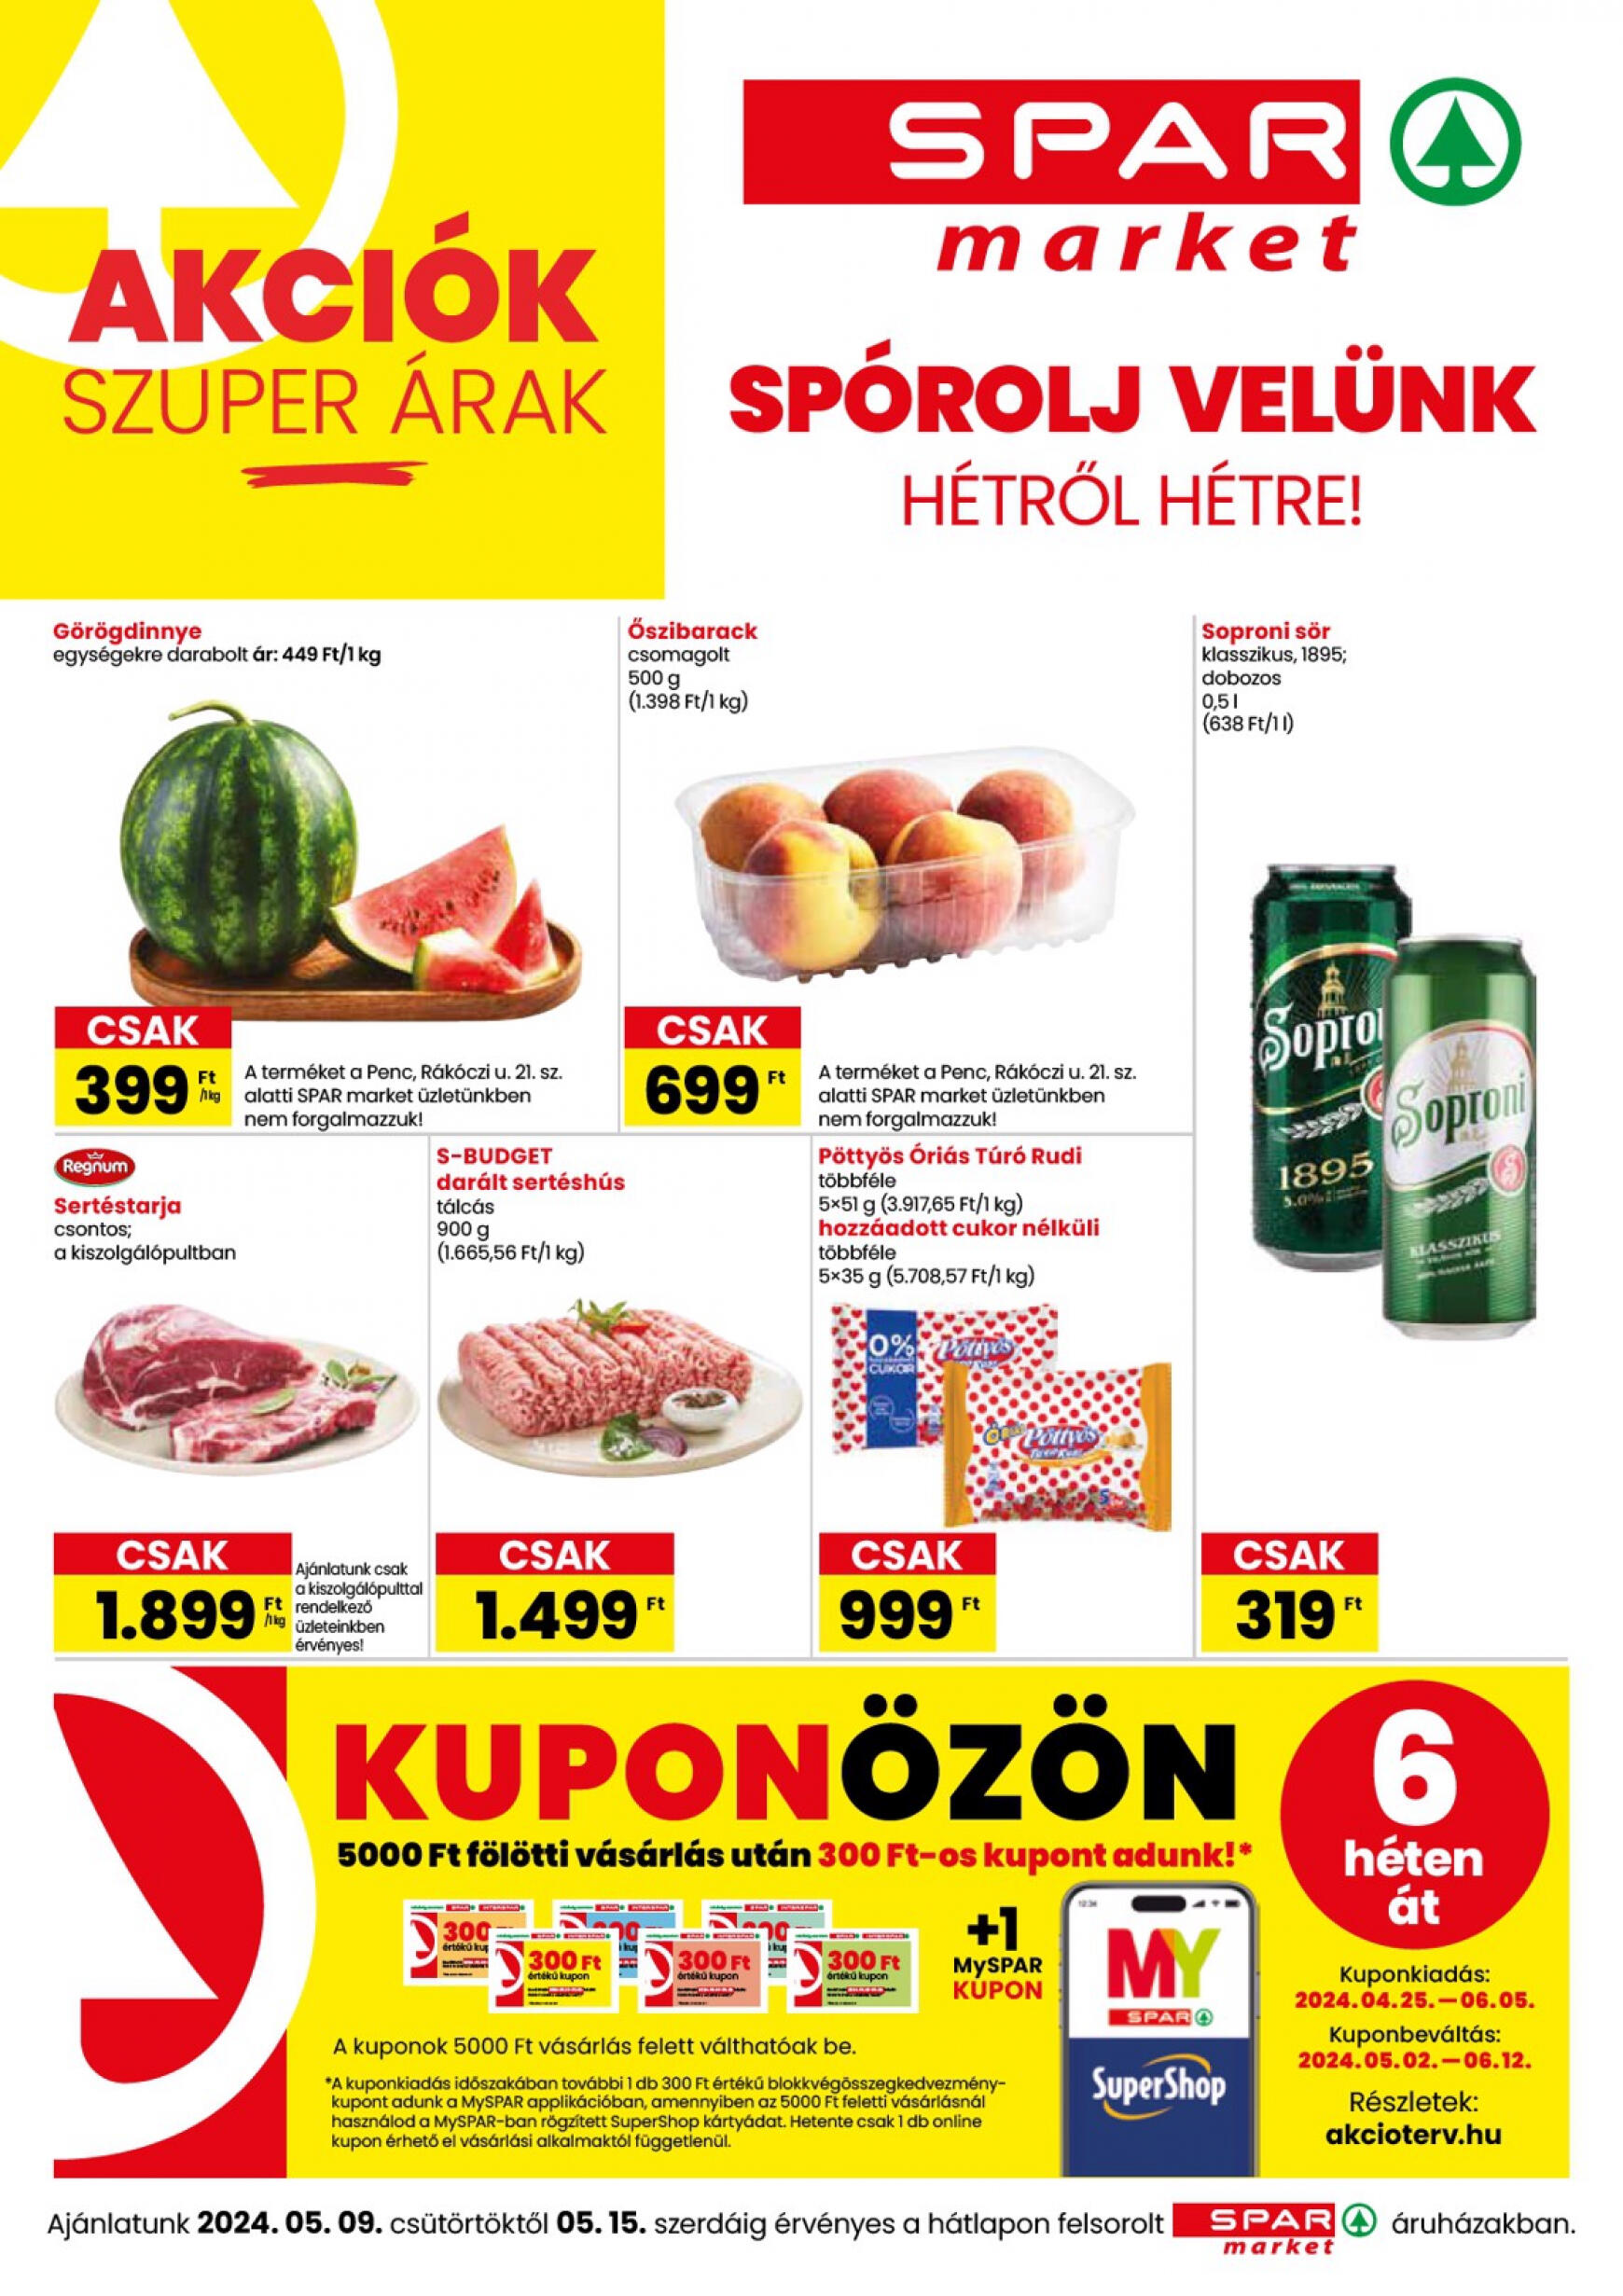 spar - Aktuális újság SPAR - market 05.09. - 05.15.